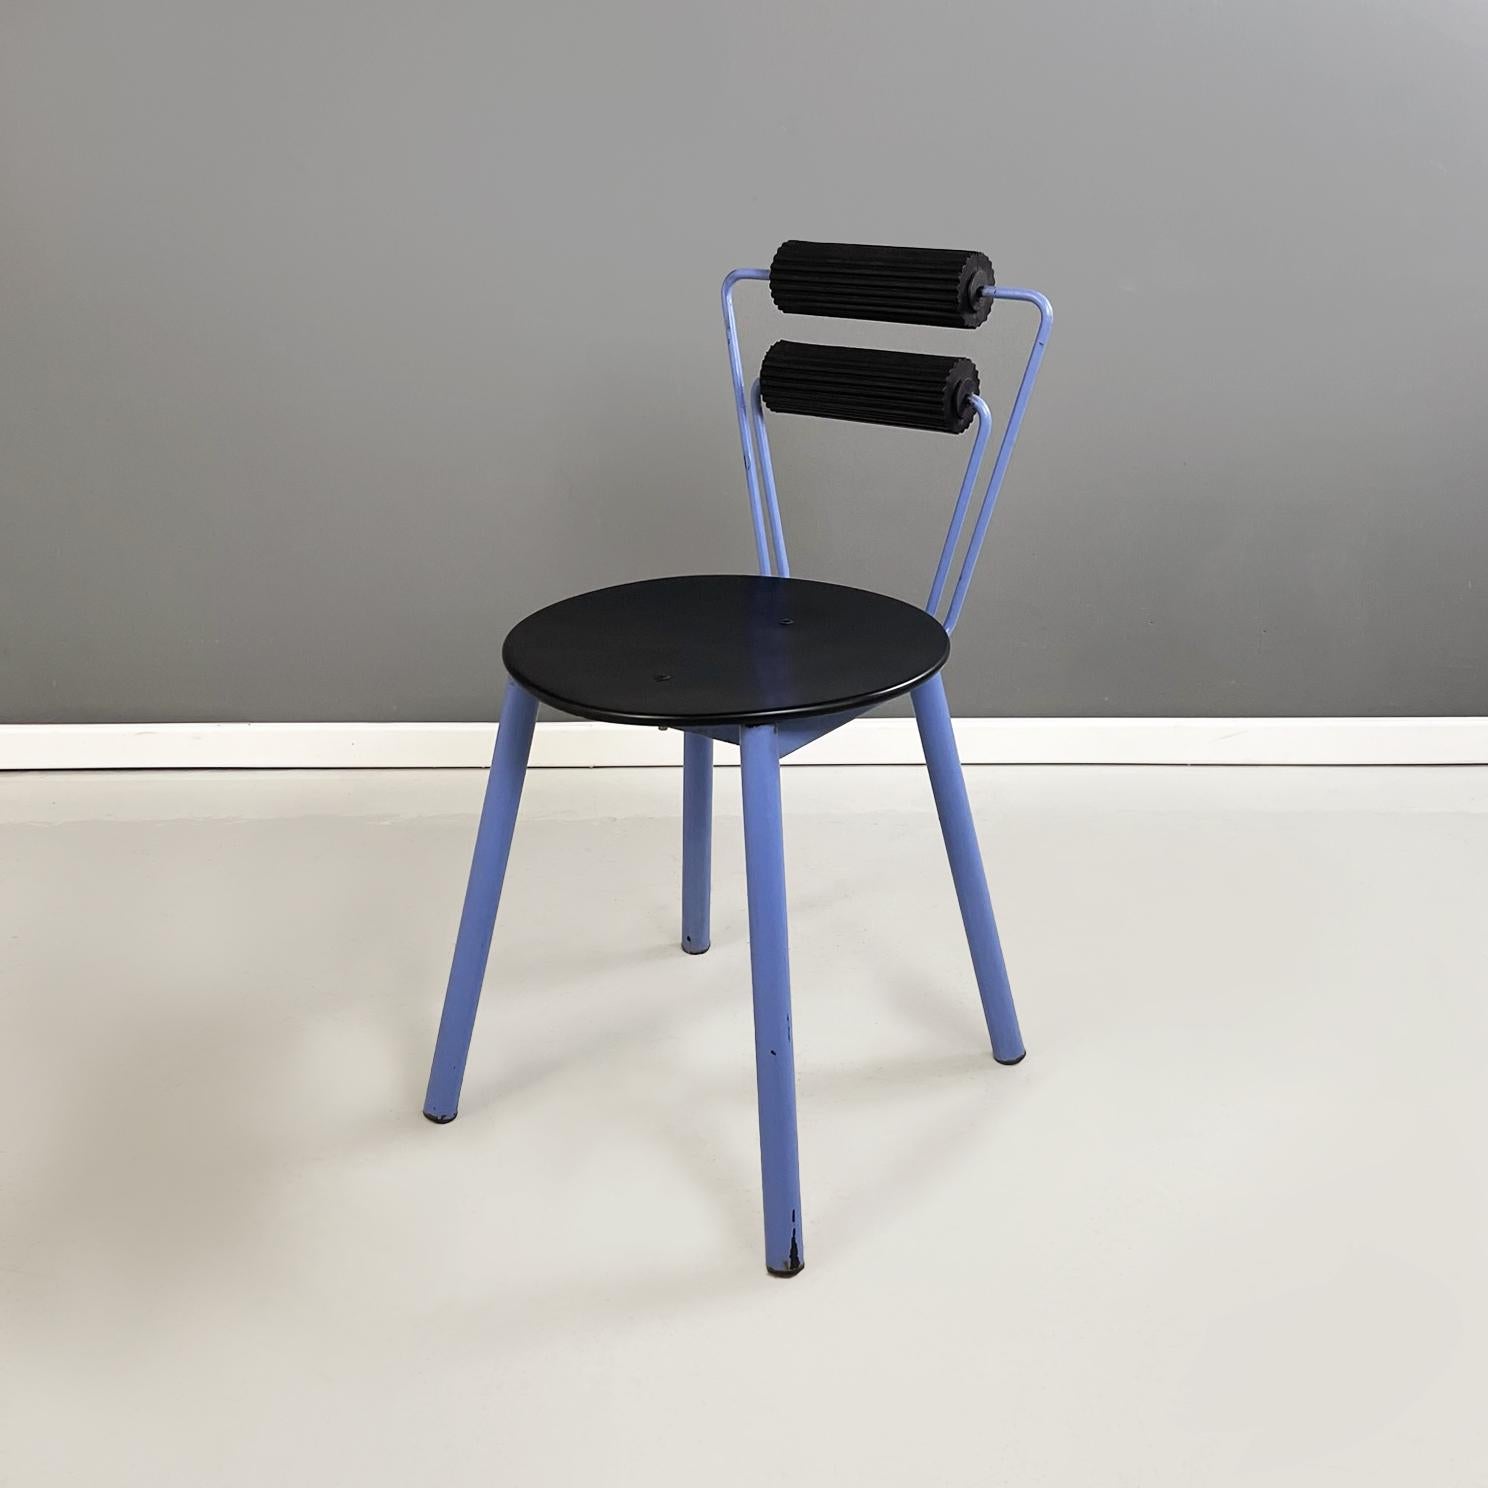 Chaises modernes italiennes en métal bleu, bois noir et caoutchouc noir, années 1980
Paire de chaises fantastiques et vintage avec assise ronde en bois peint en noir. Le dossier est composé d'une paire de tiges métalliques peintes en bleu et d'une